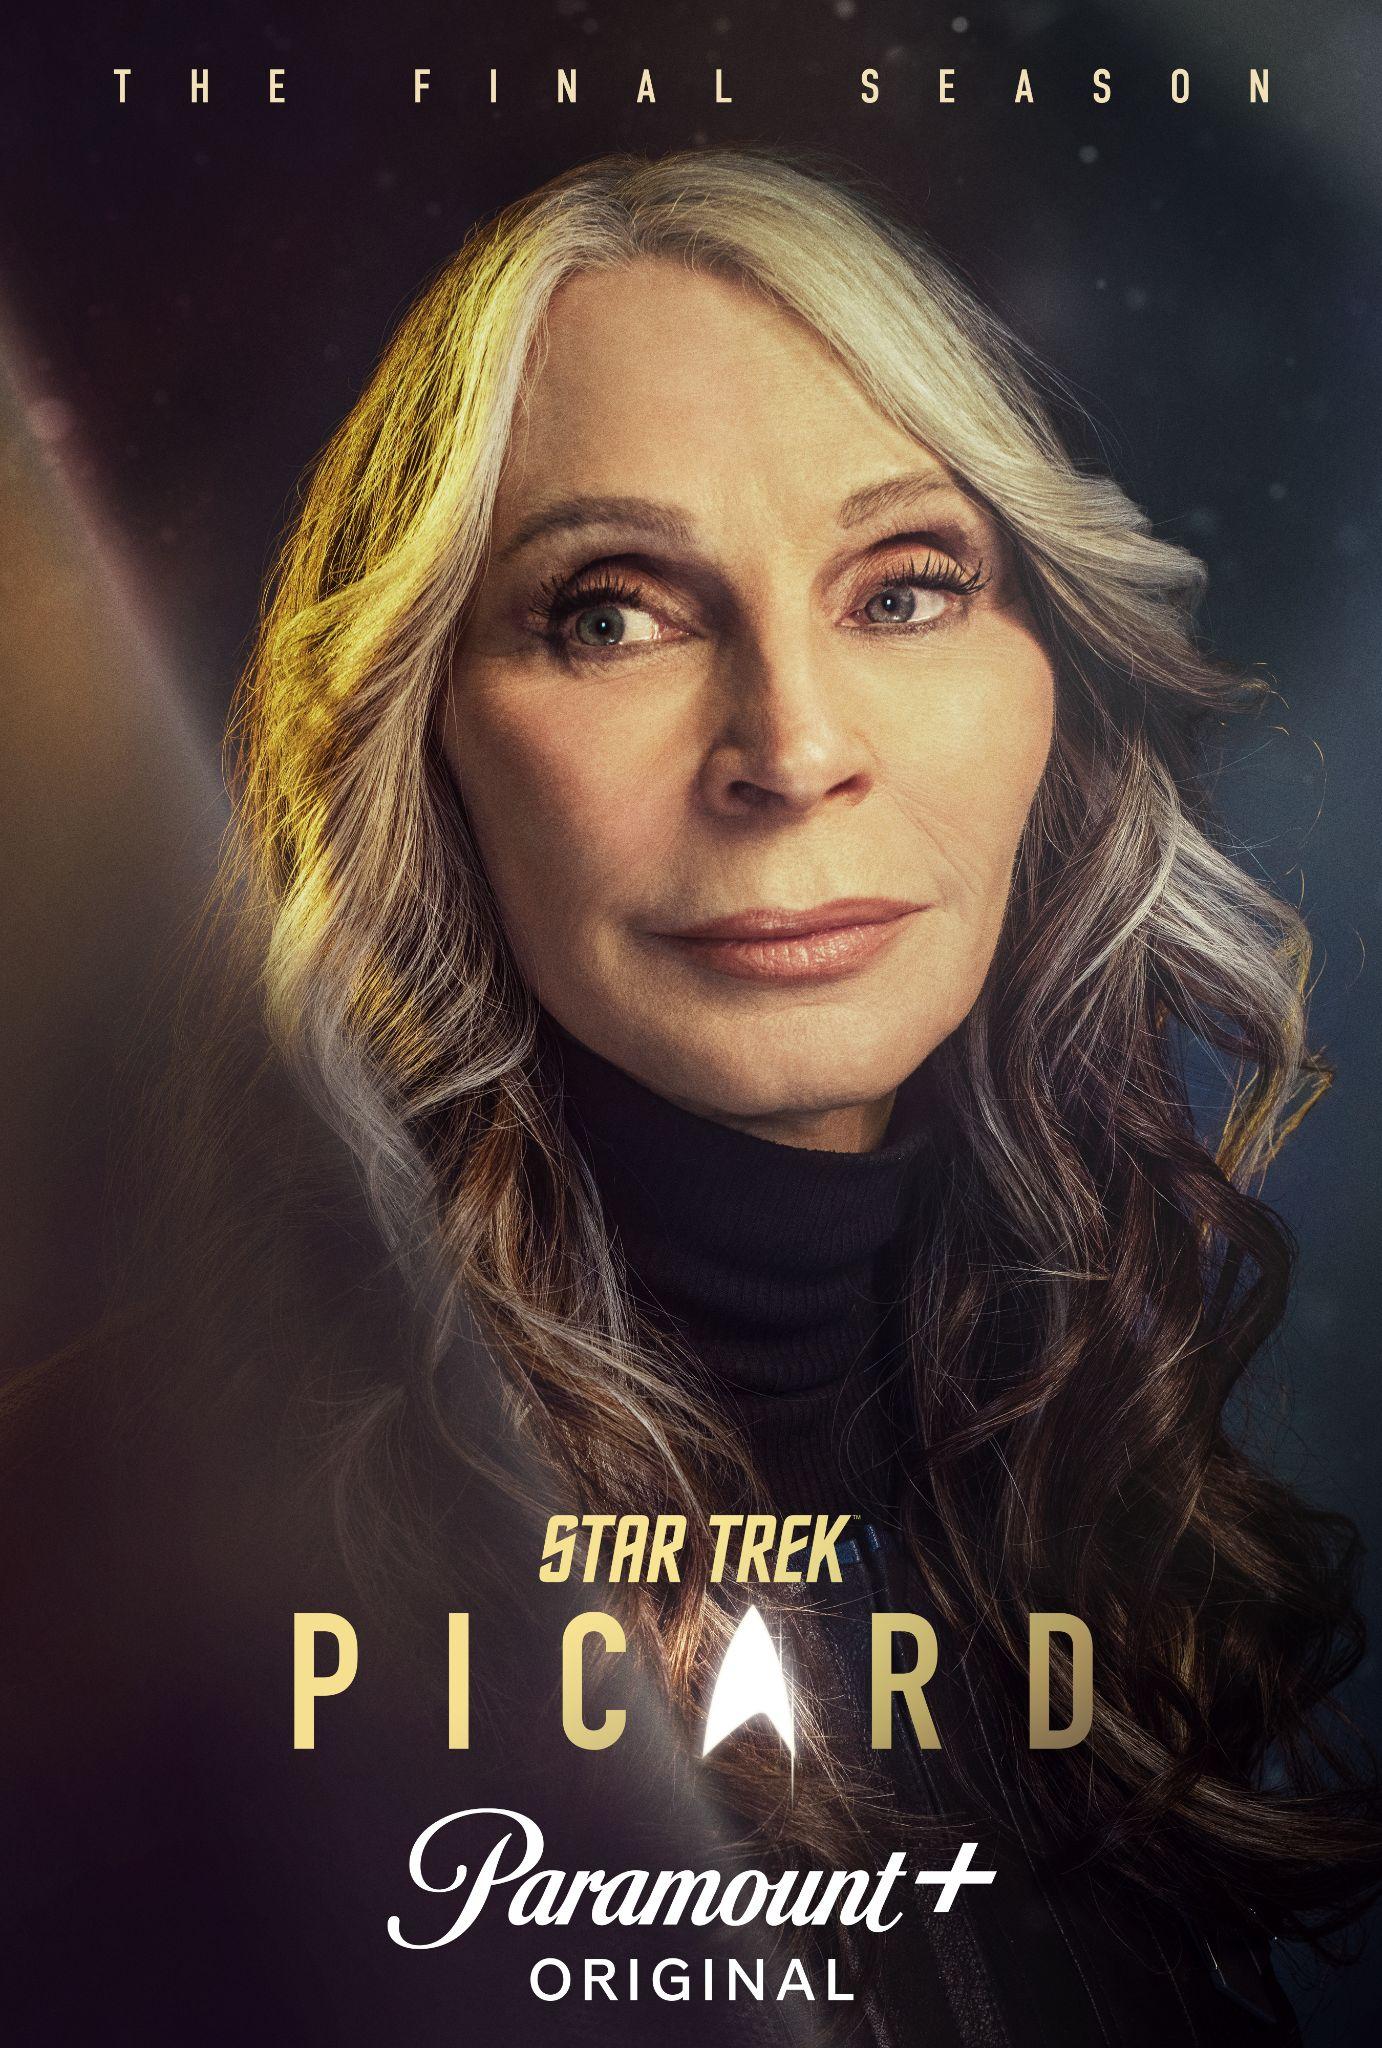 Gates McFadden as Beverly Crusher | Star Trek: Picard | Season 3 | Character poster